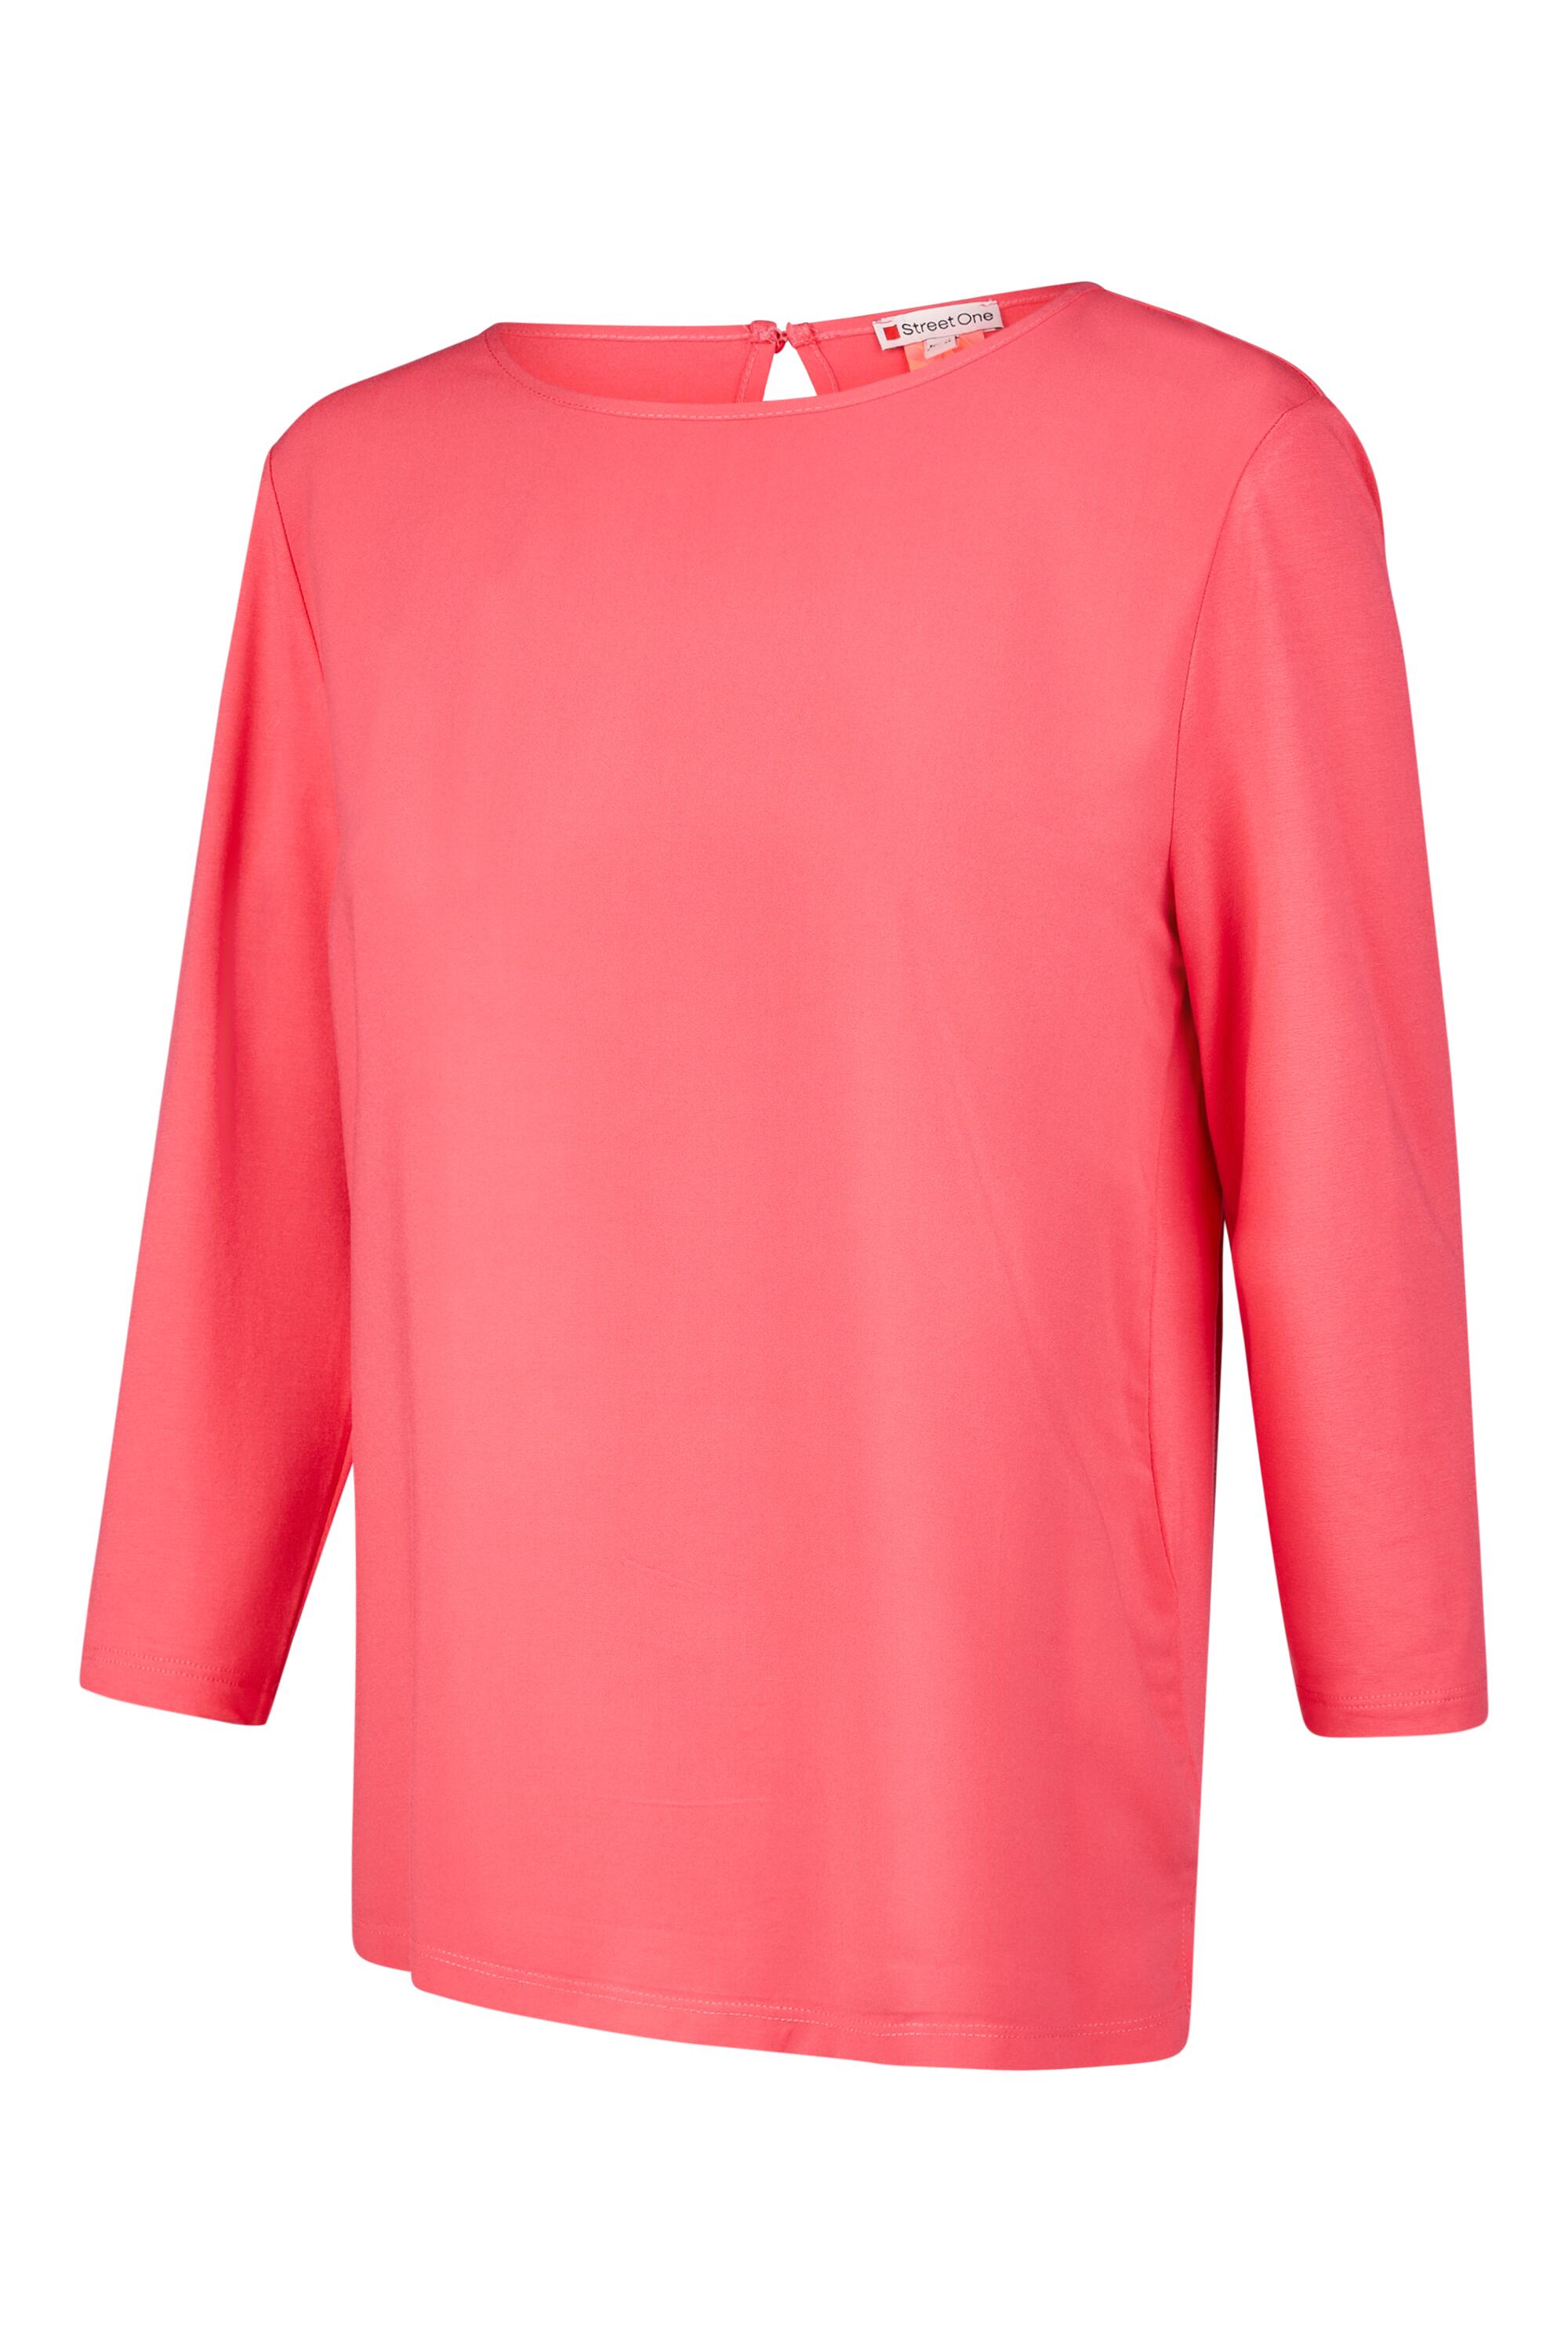 Arm | 40 Street Shirt pink 3/4 I0134466-3 | | von One